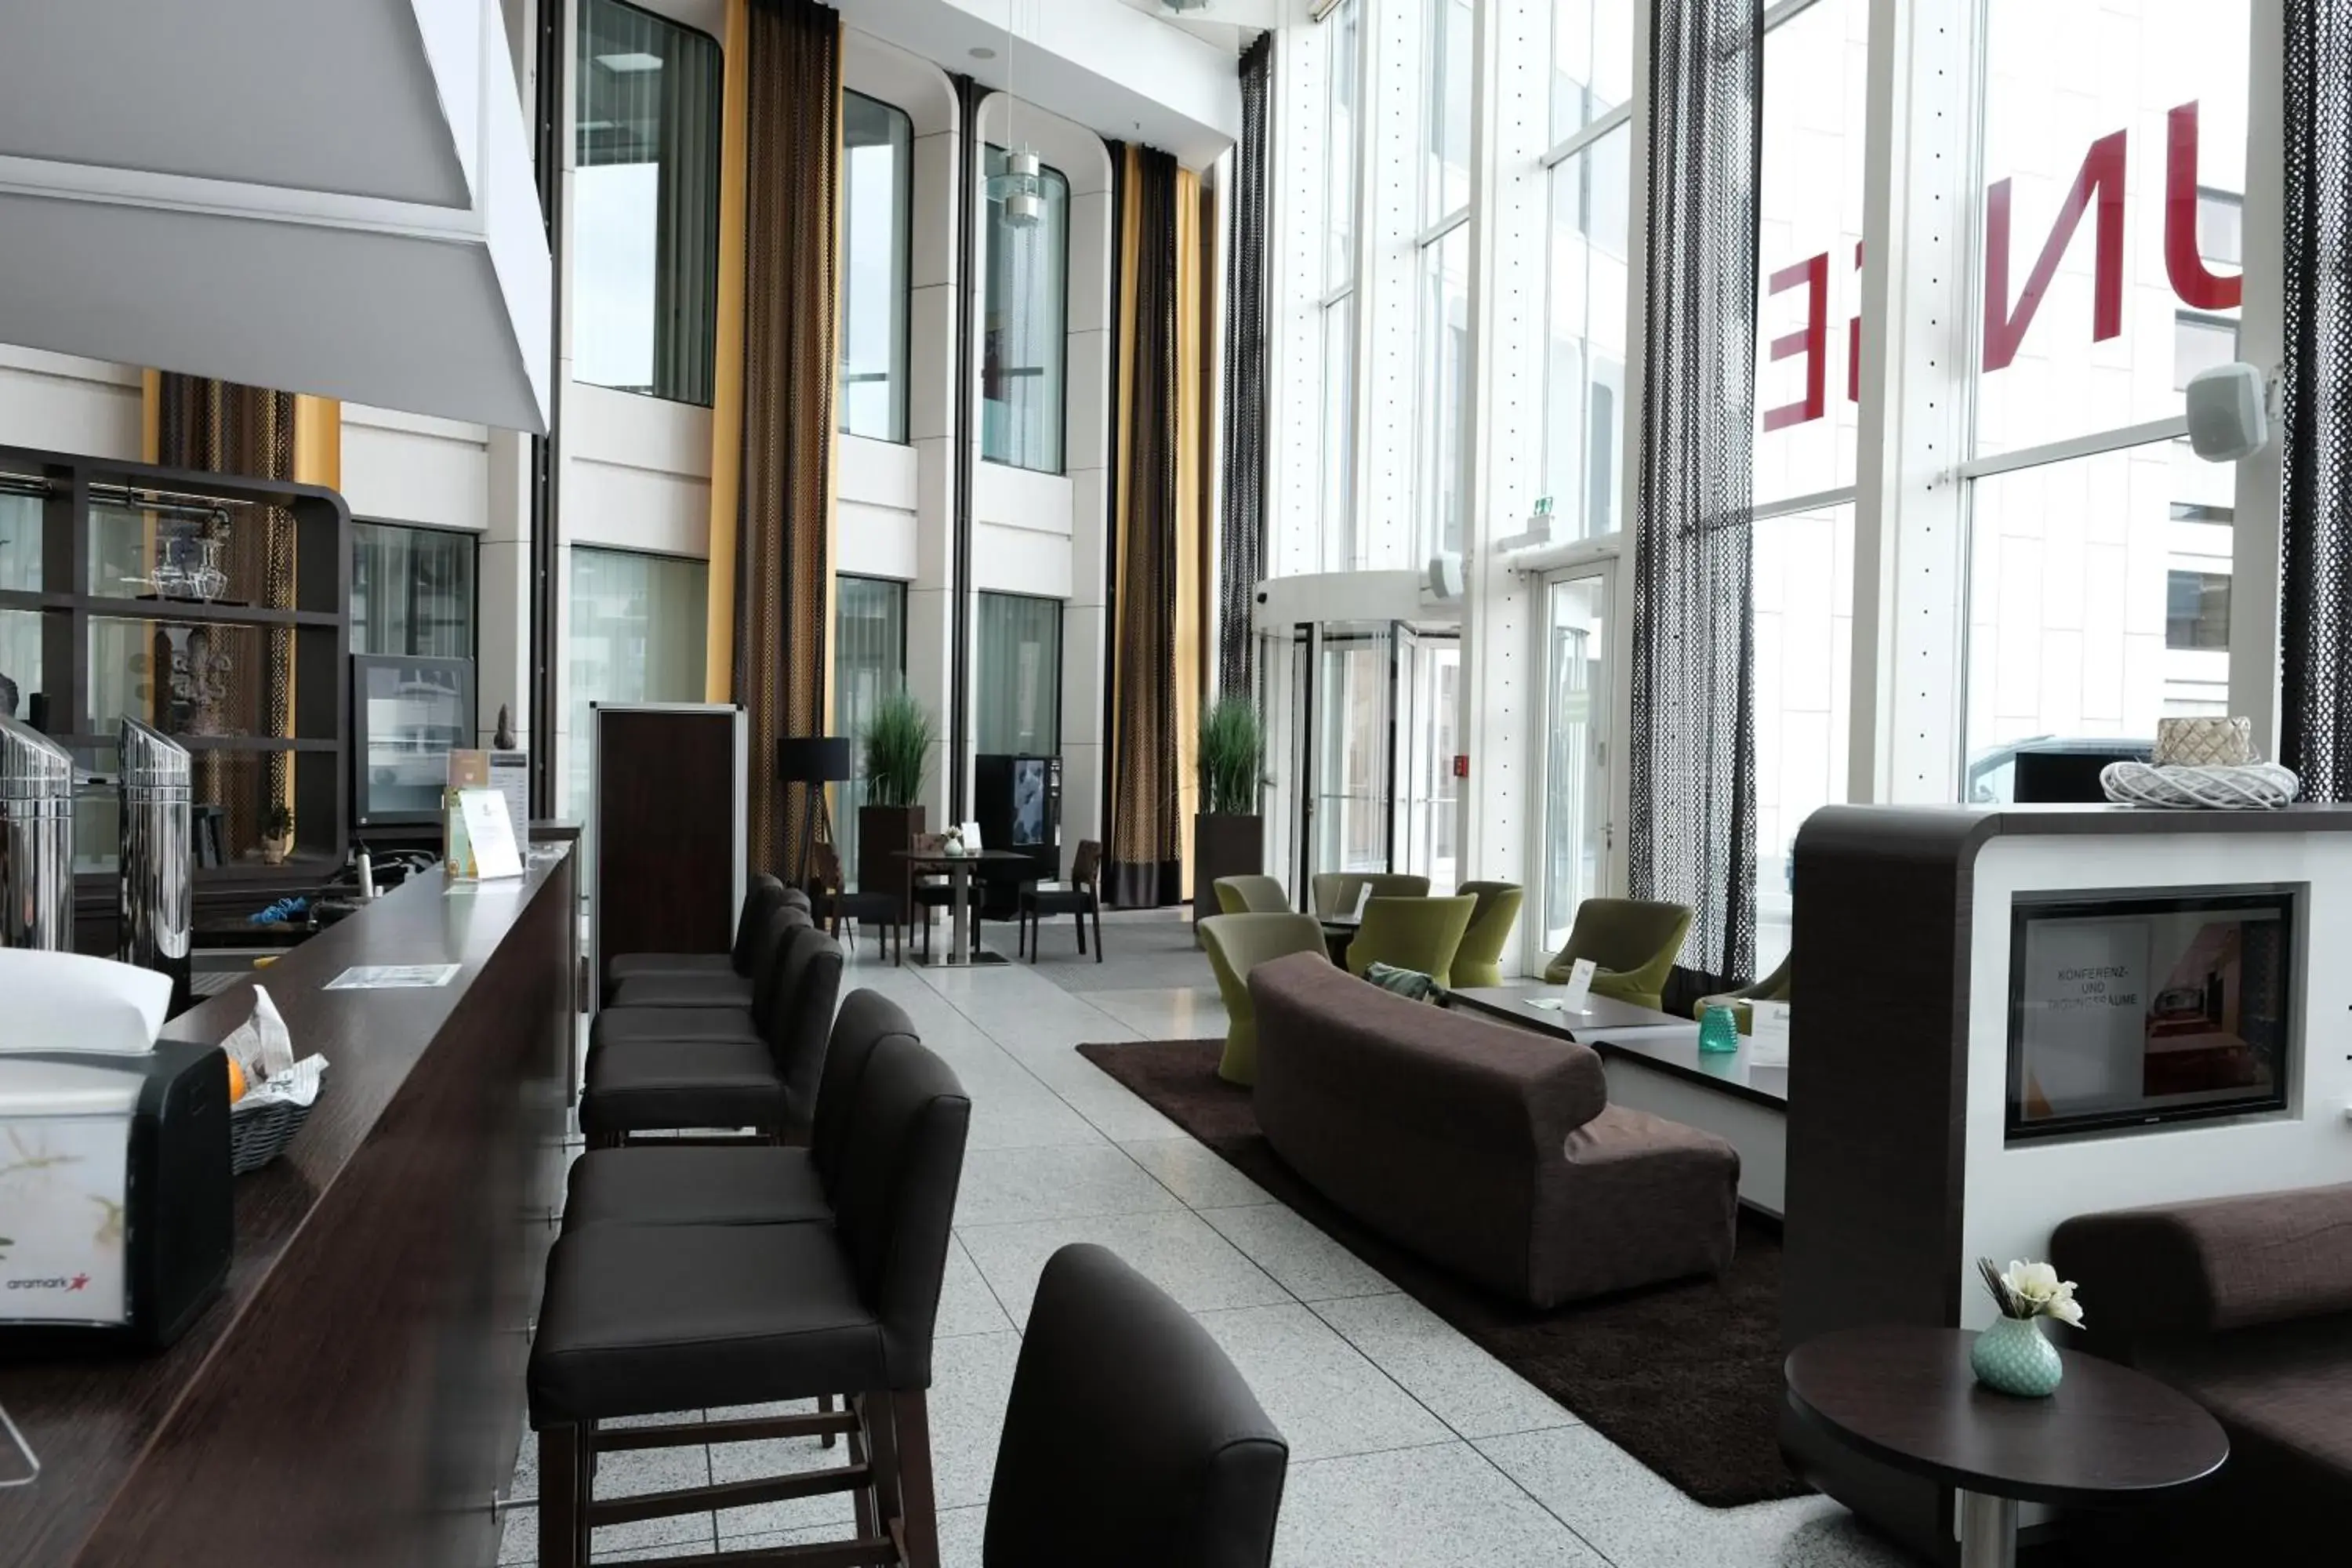 Lobby or reception in Webers - Das Hotel im Ruhrturm